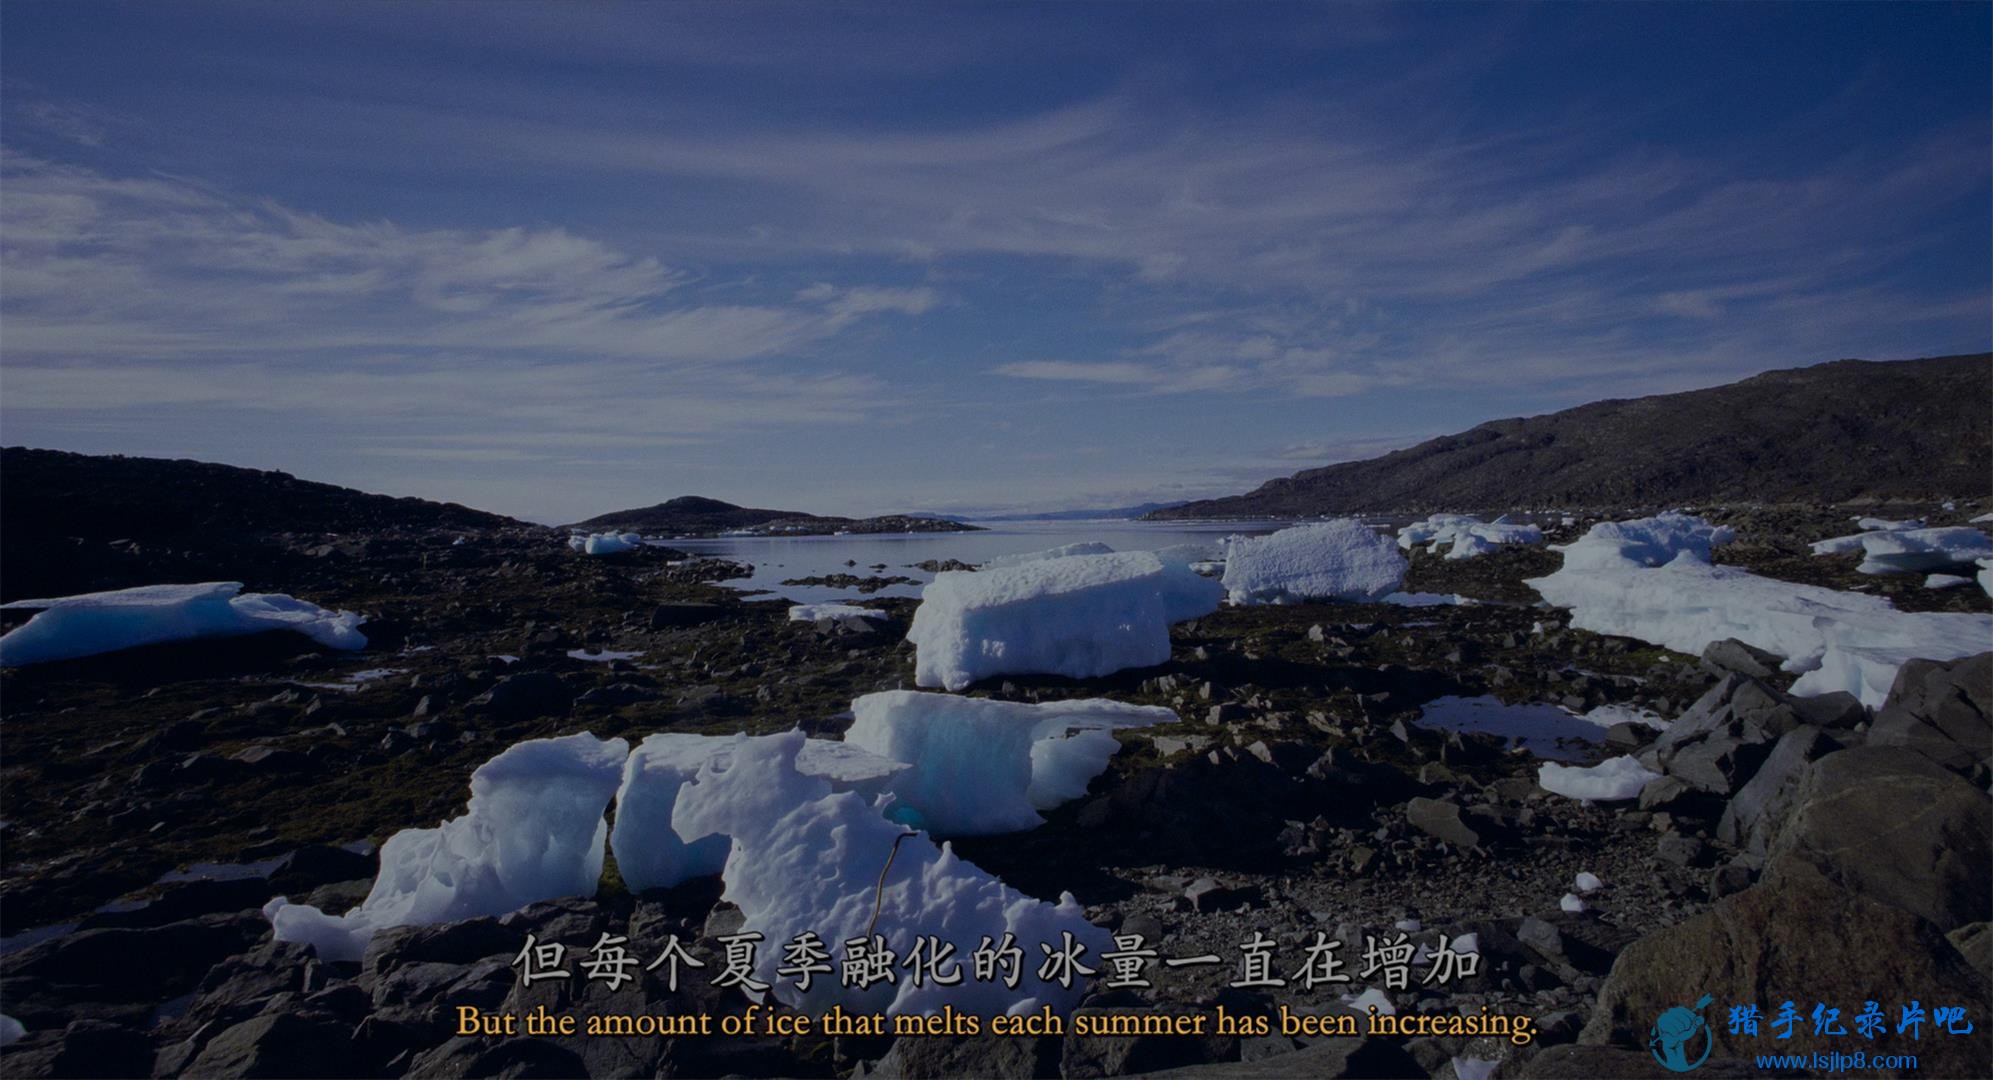 Wonders.of.the.Arctic.2014.2160p.UHD.BluRay.x265-WhiteRhino.mkv_20200704_100946.468(1).jpg